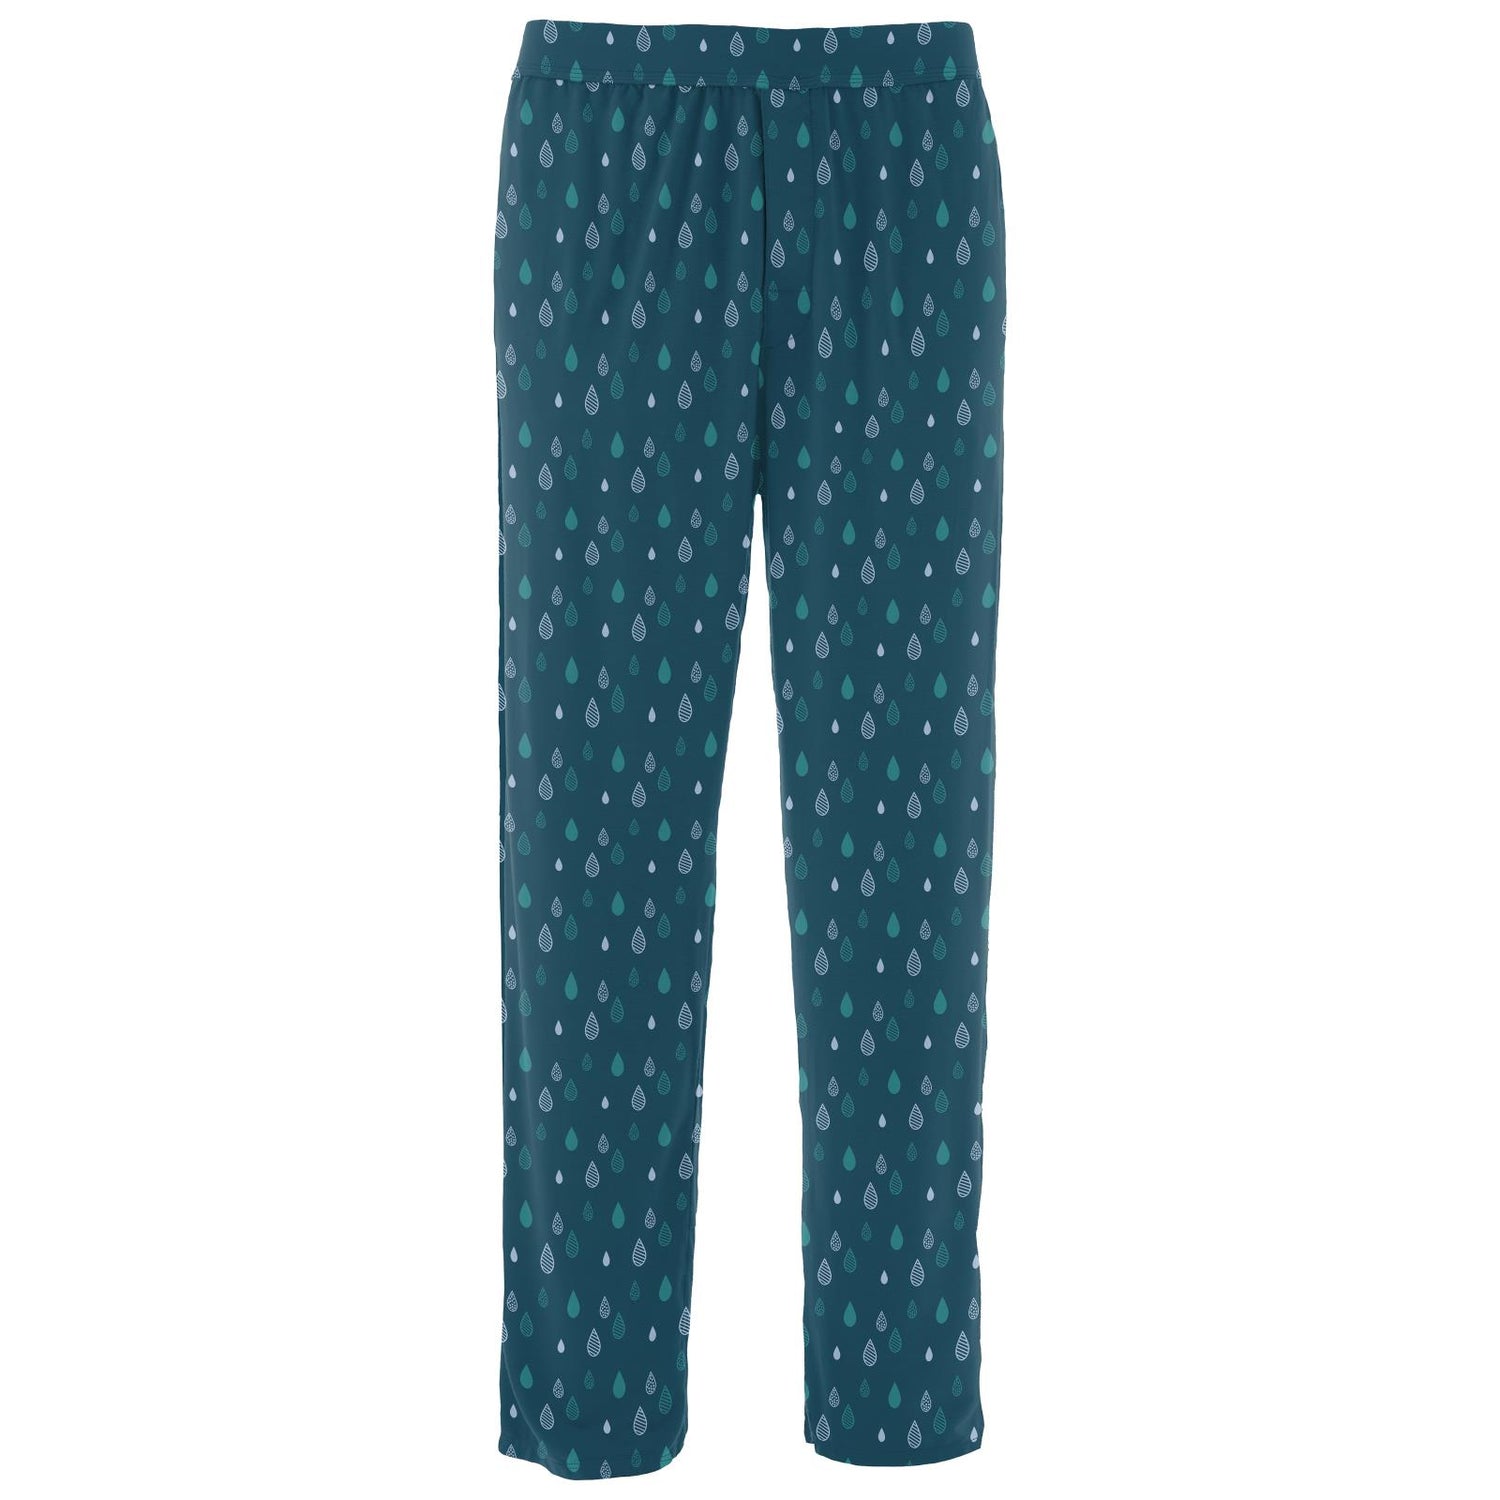 Men's Print Pajama Pants in Peacock Raindrops